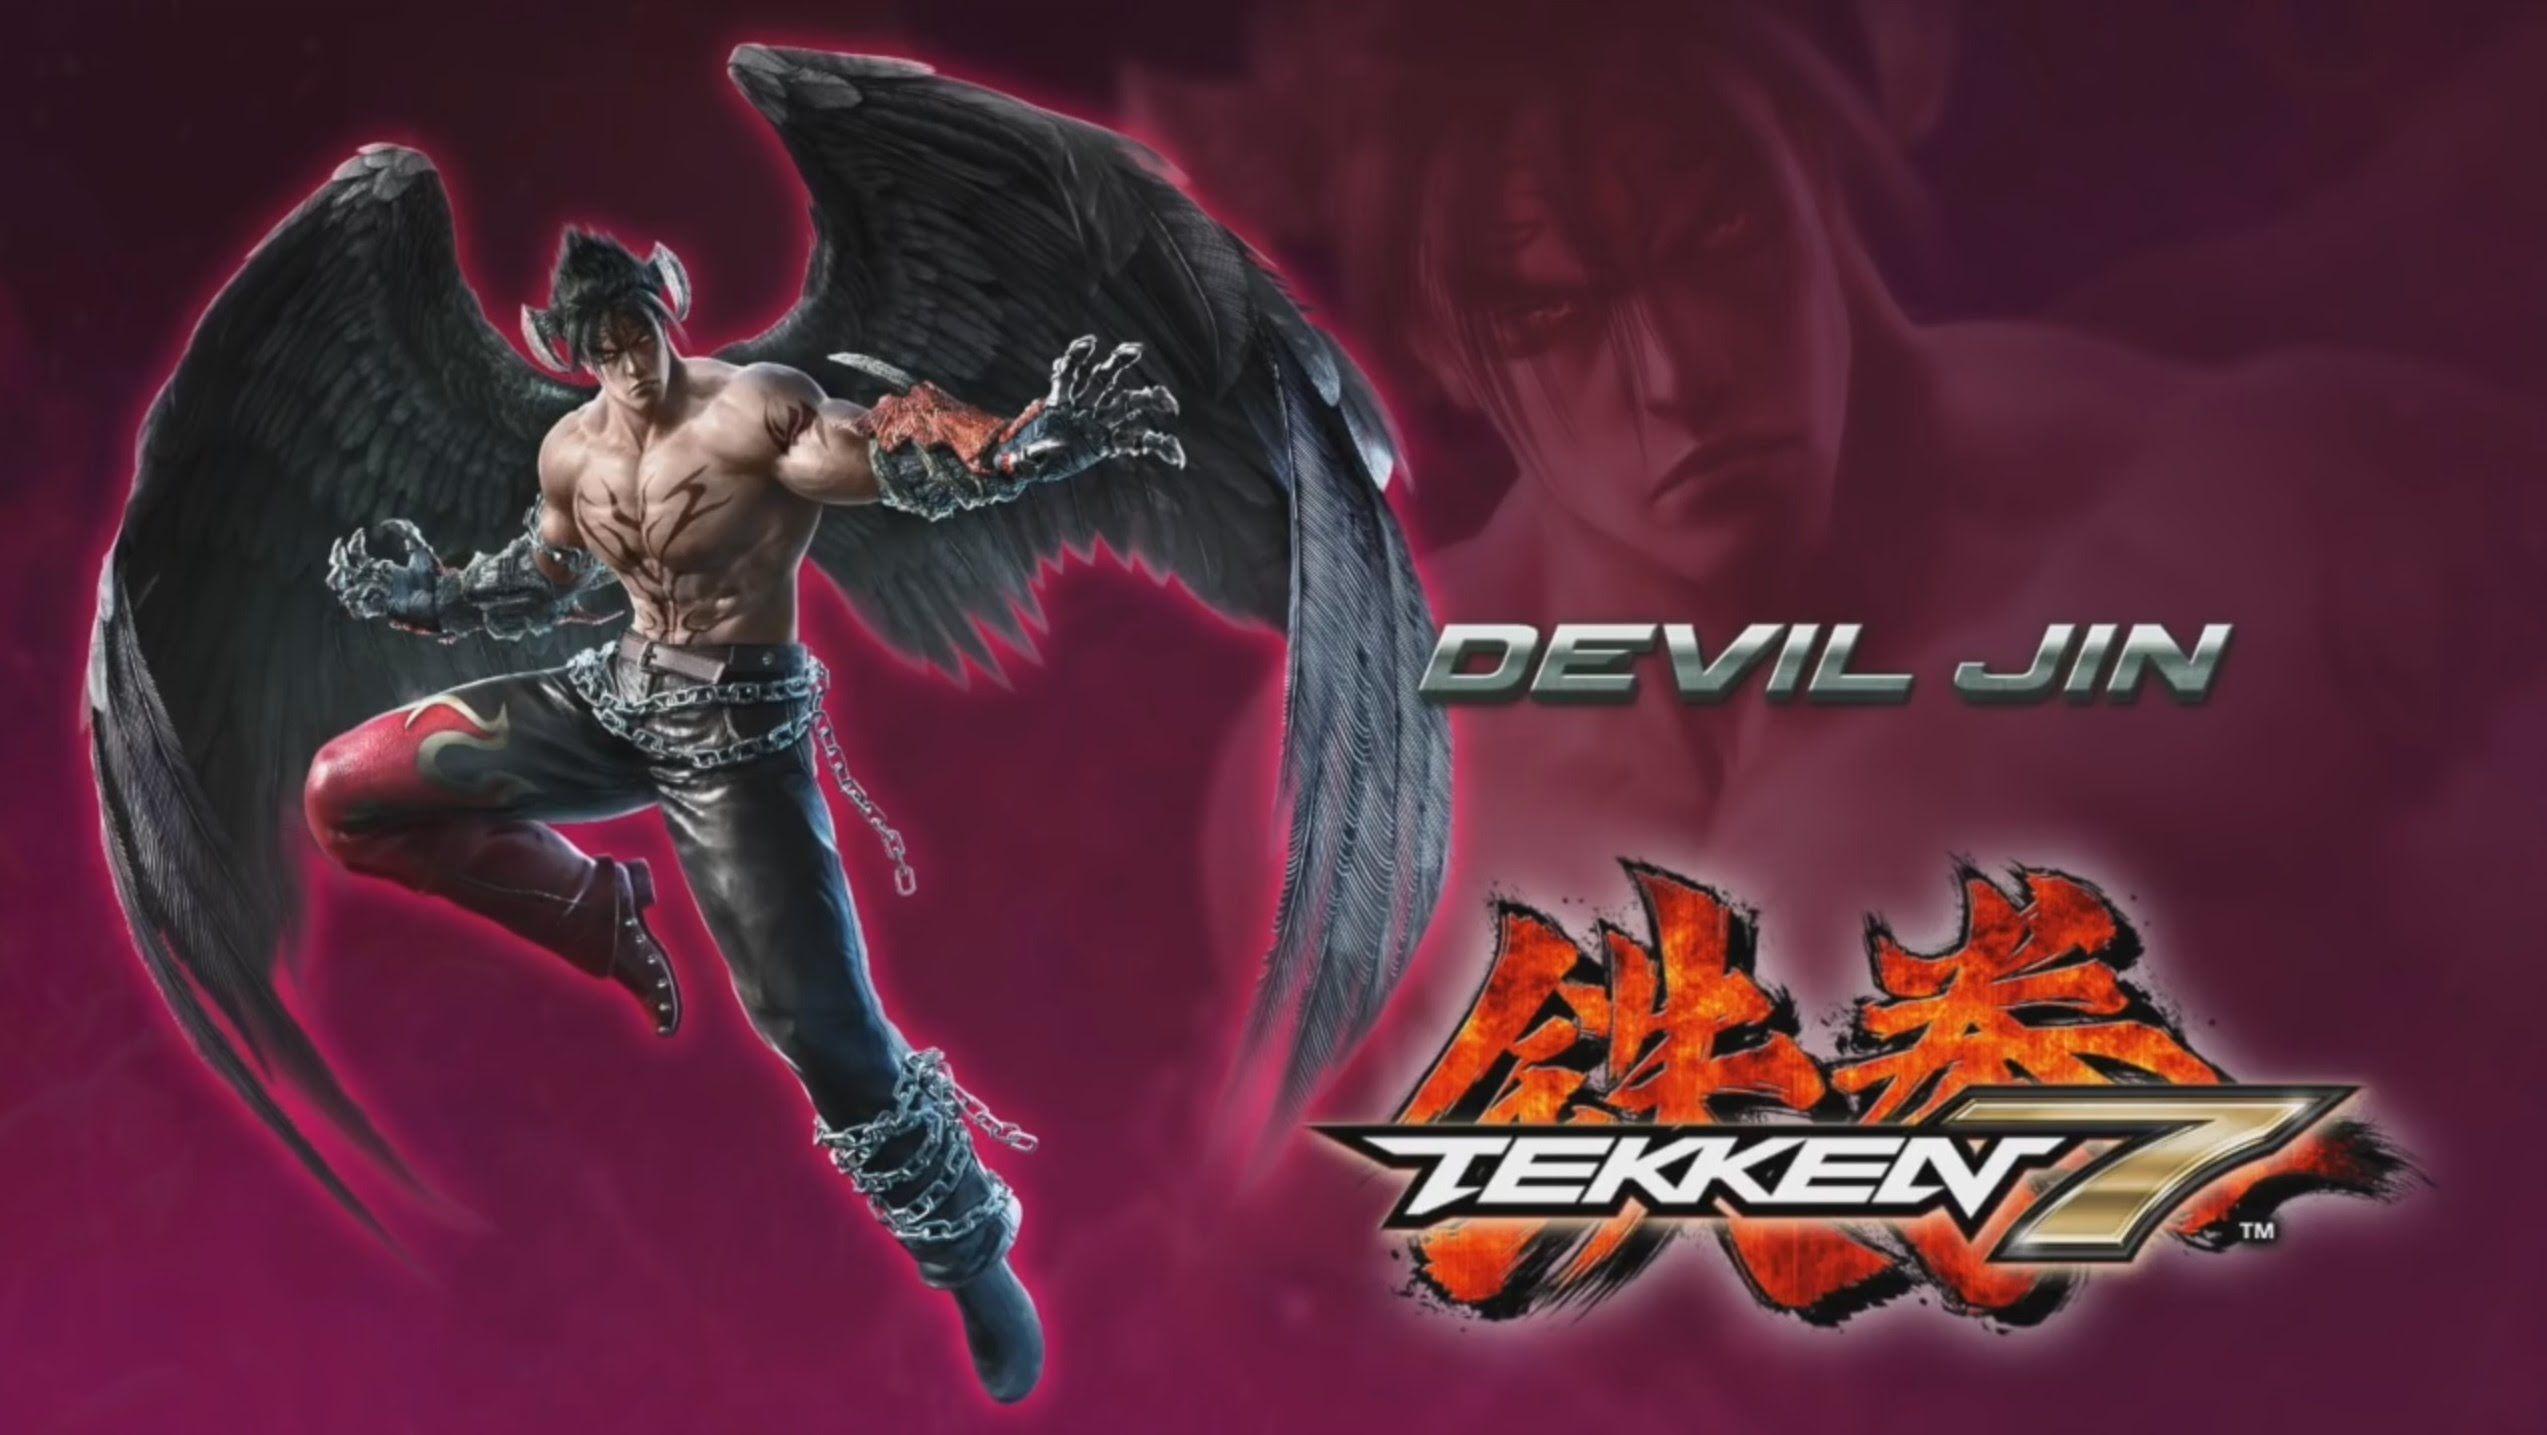 Tekken 7 HD wallpaper free download